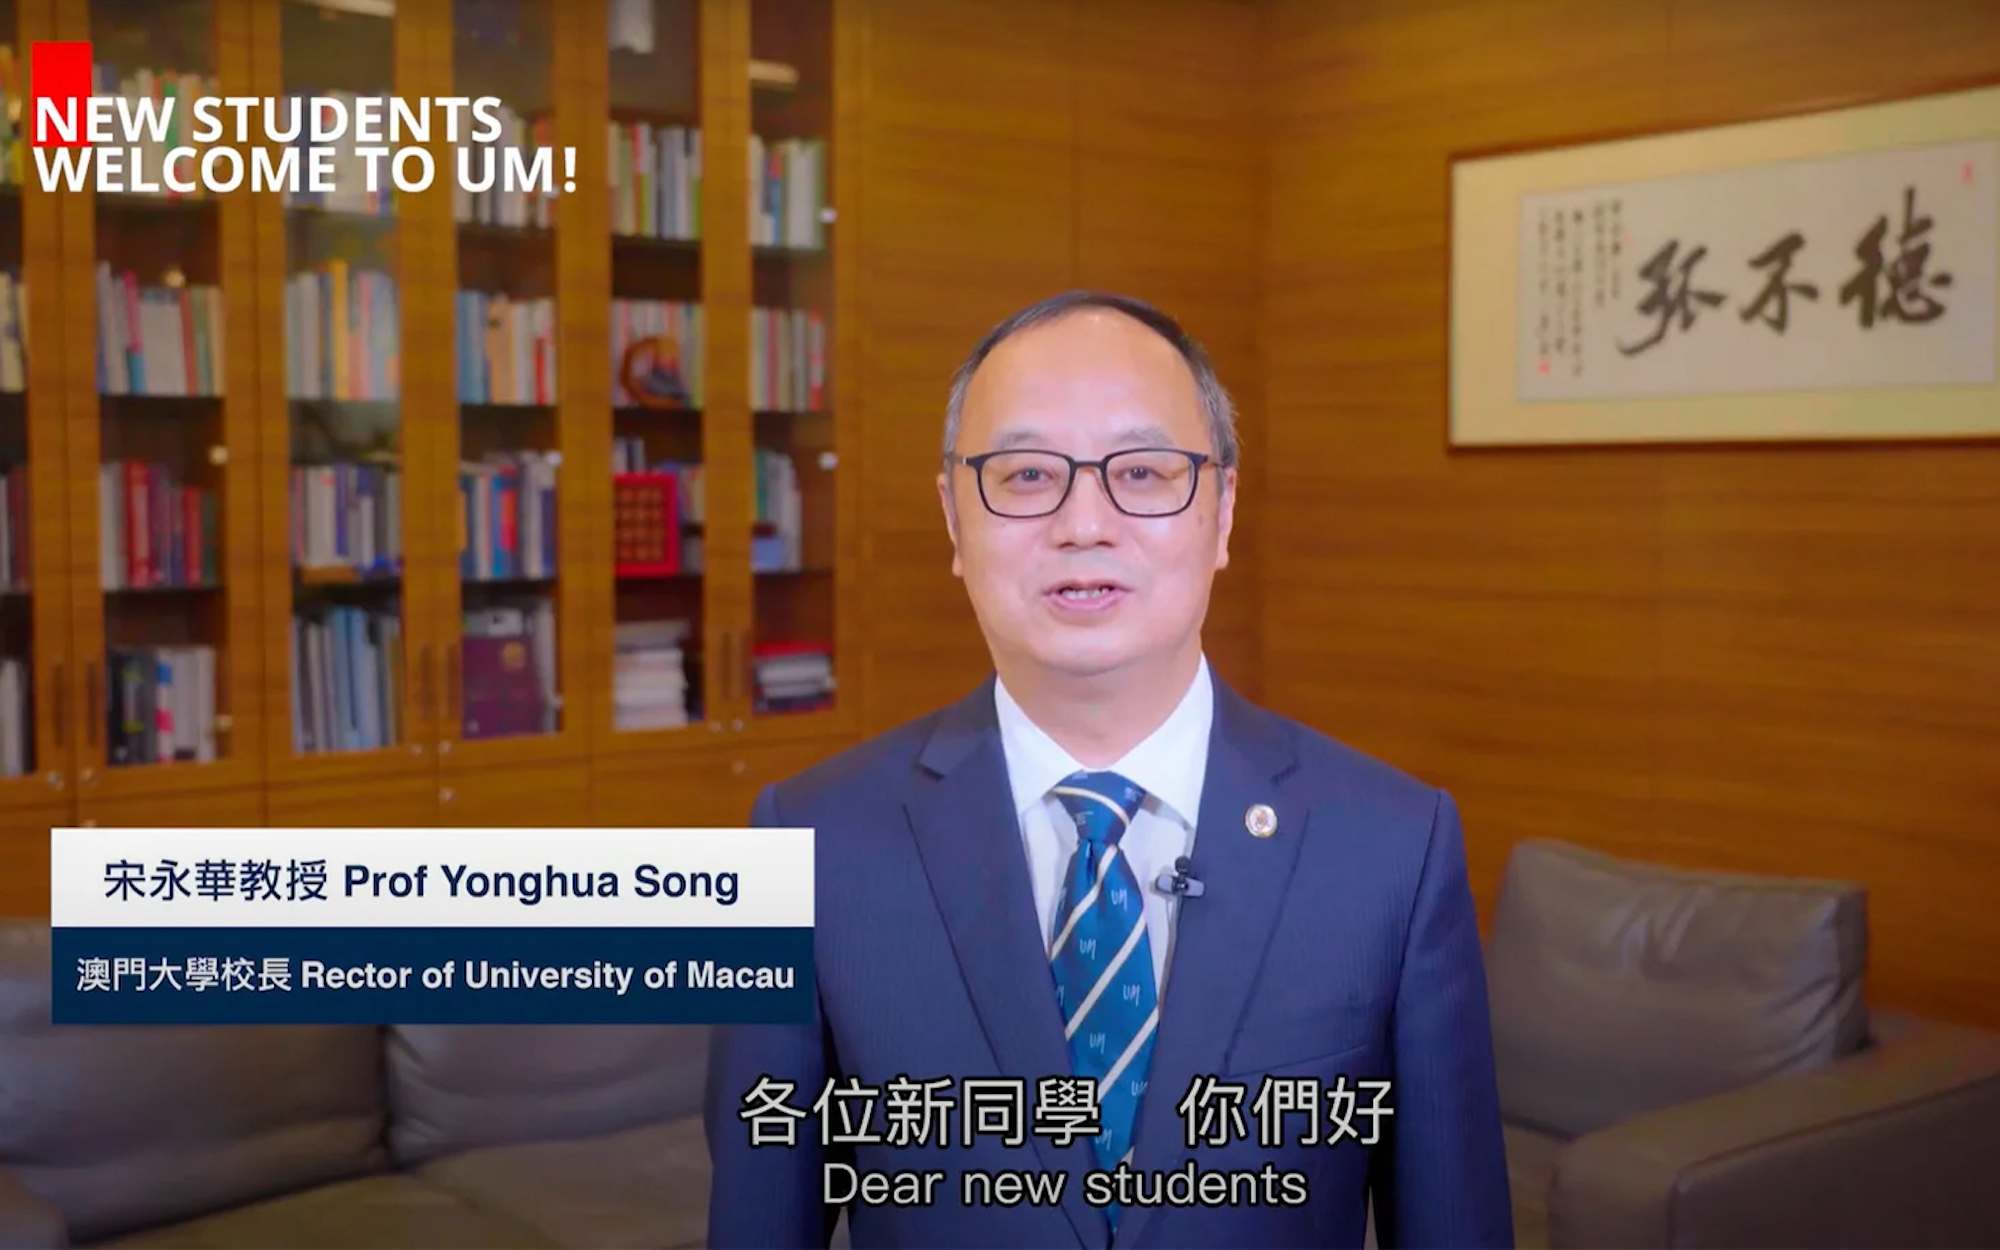 University of Macau welcomes 3,900 new students